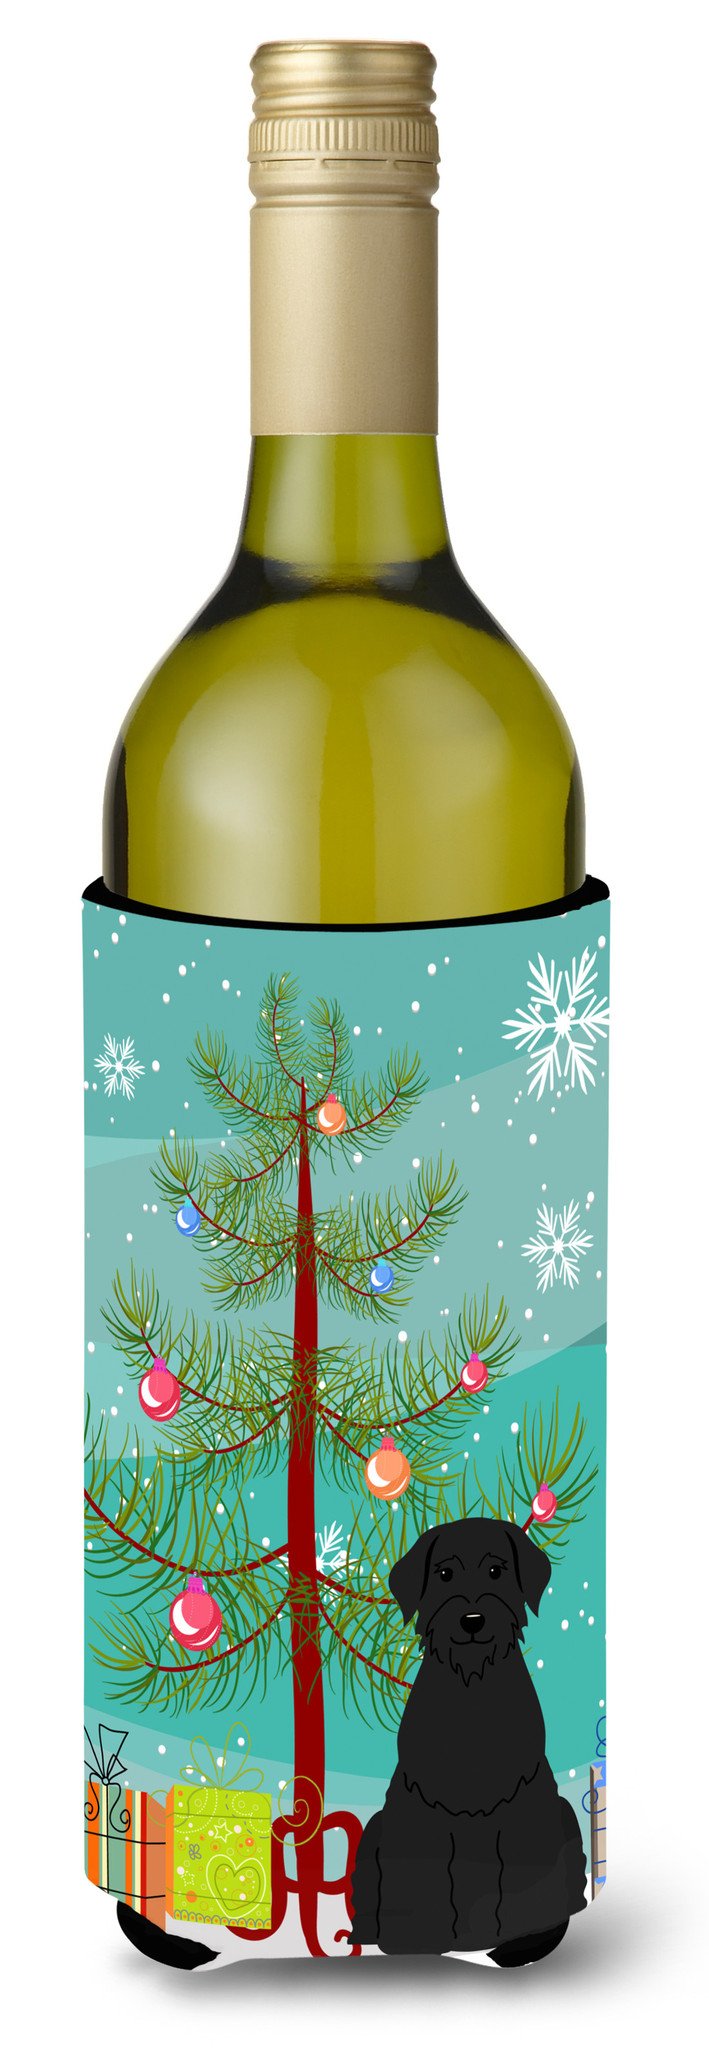 Merry Christmas Tree Giant Schnauzer Wine Bottle Beverge Insulator Hugger BB4191LITERK by Caroline's Treasures